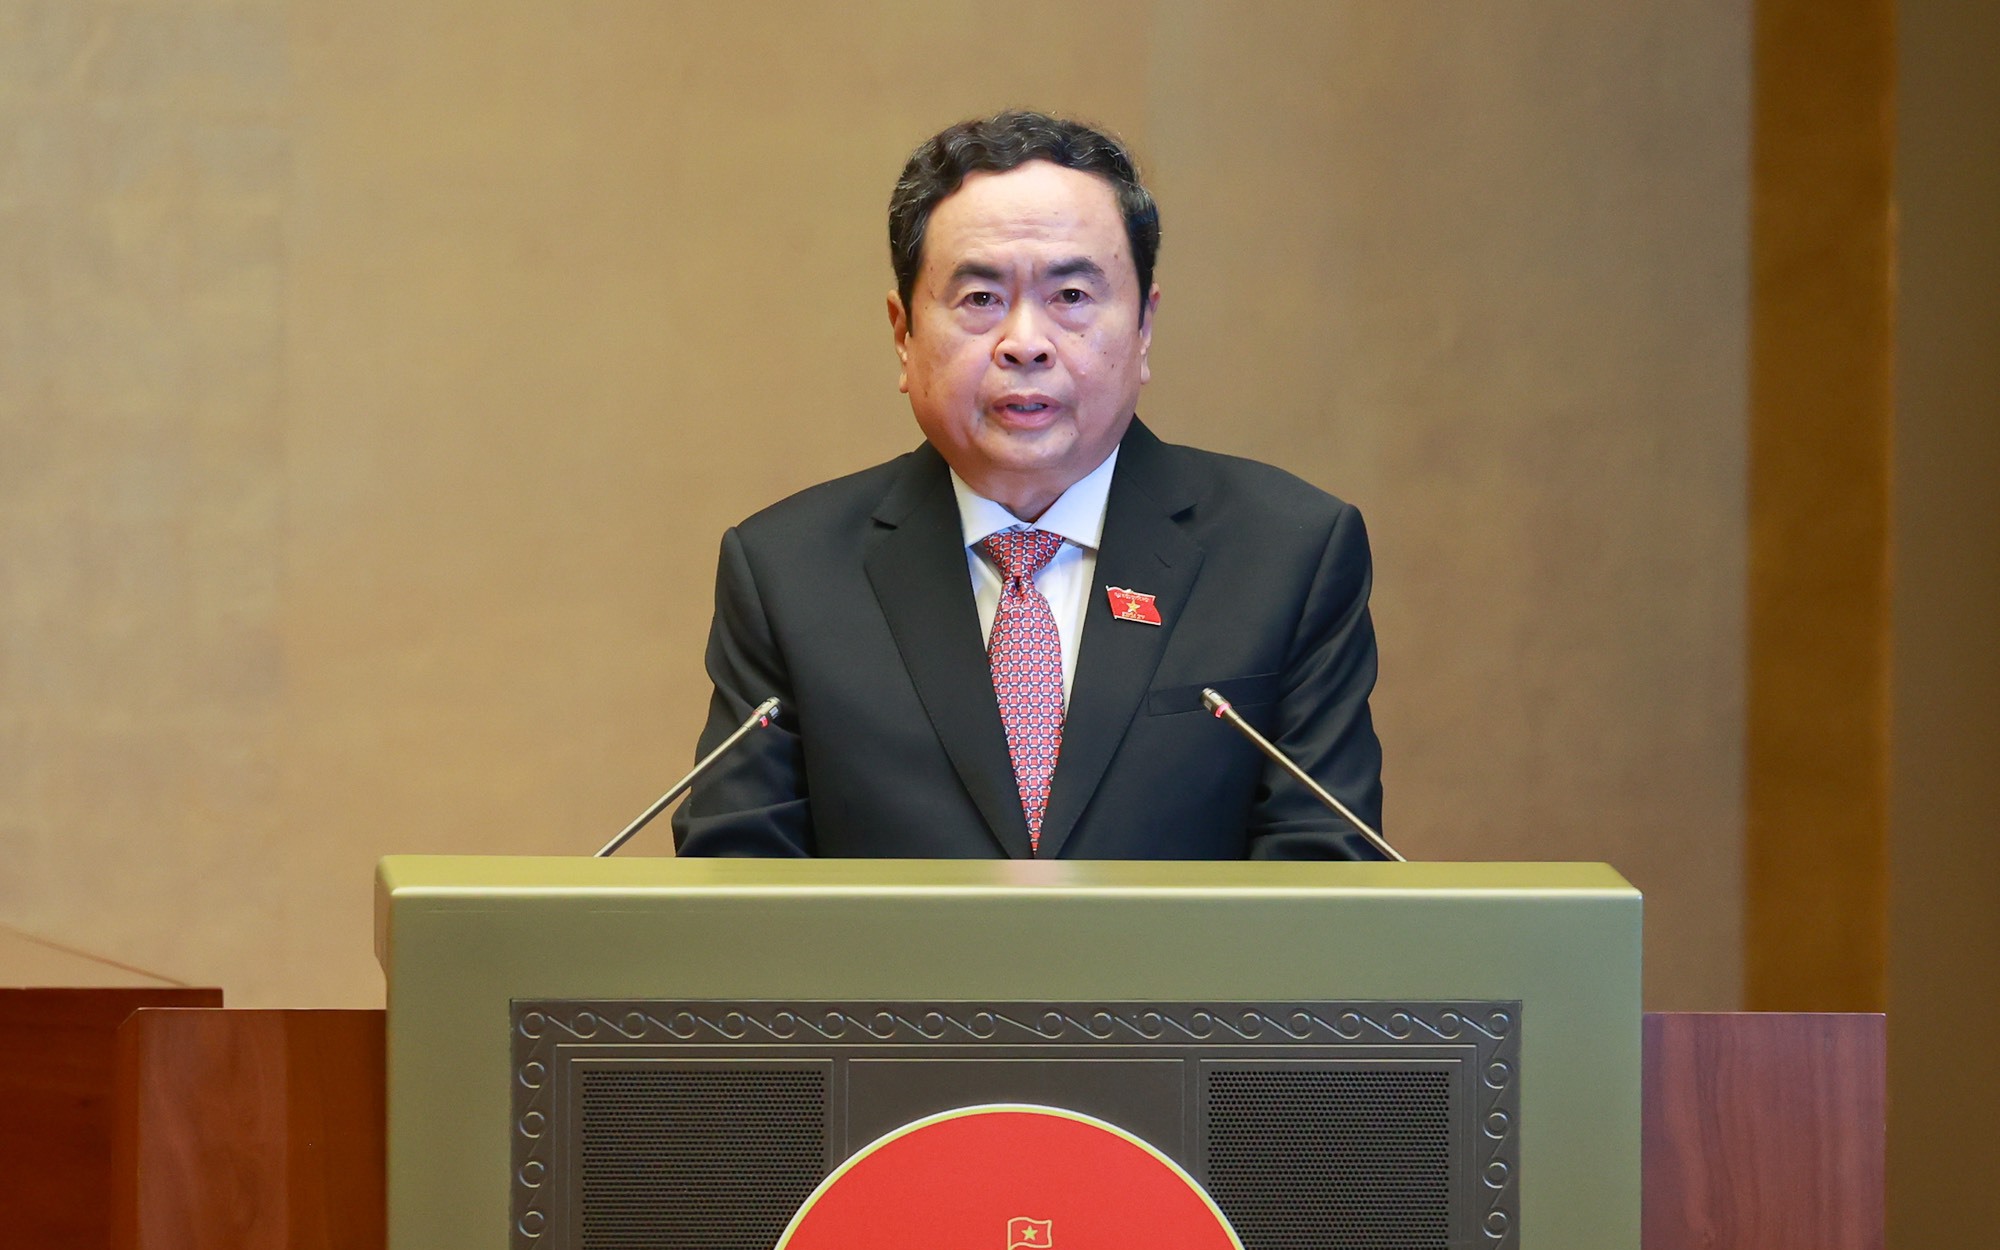 Quốc hội bầu ông Trần Thanh Mẫn làm Chủ tịch Quốc hội